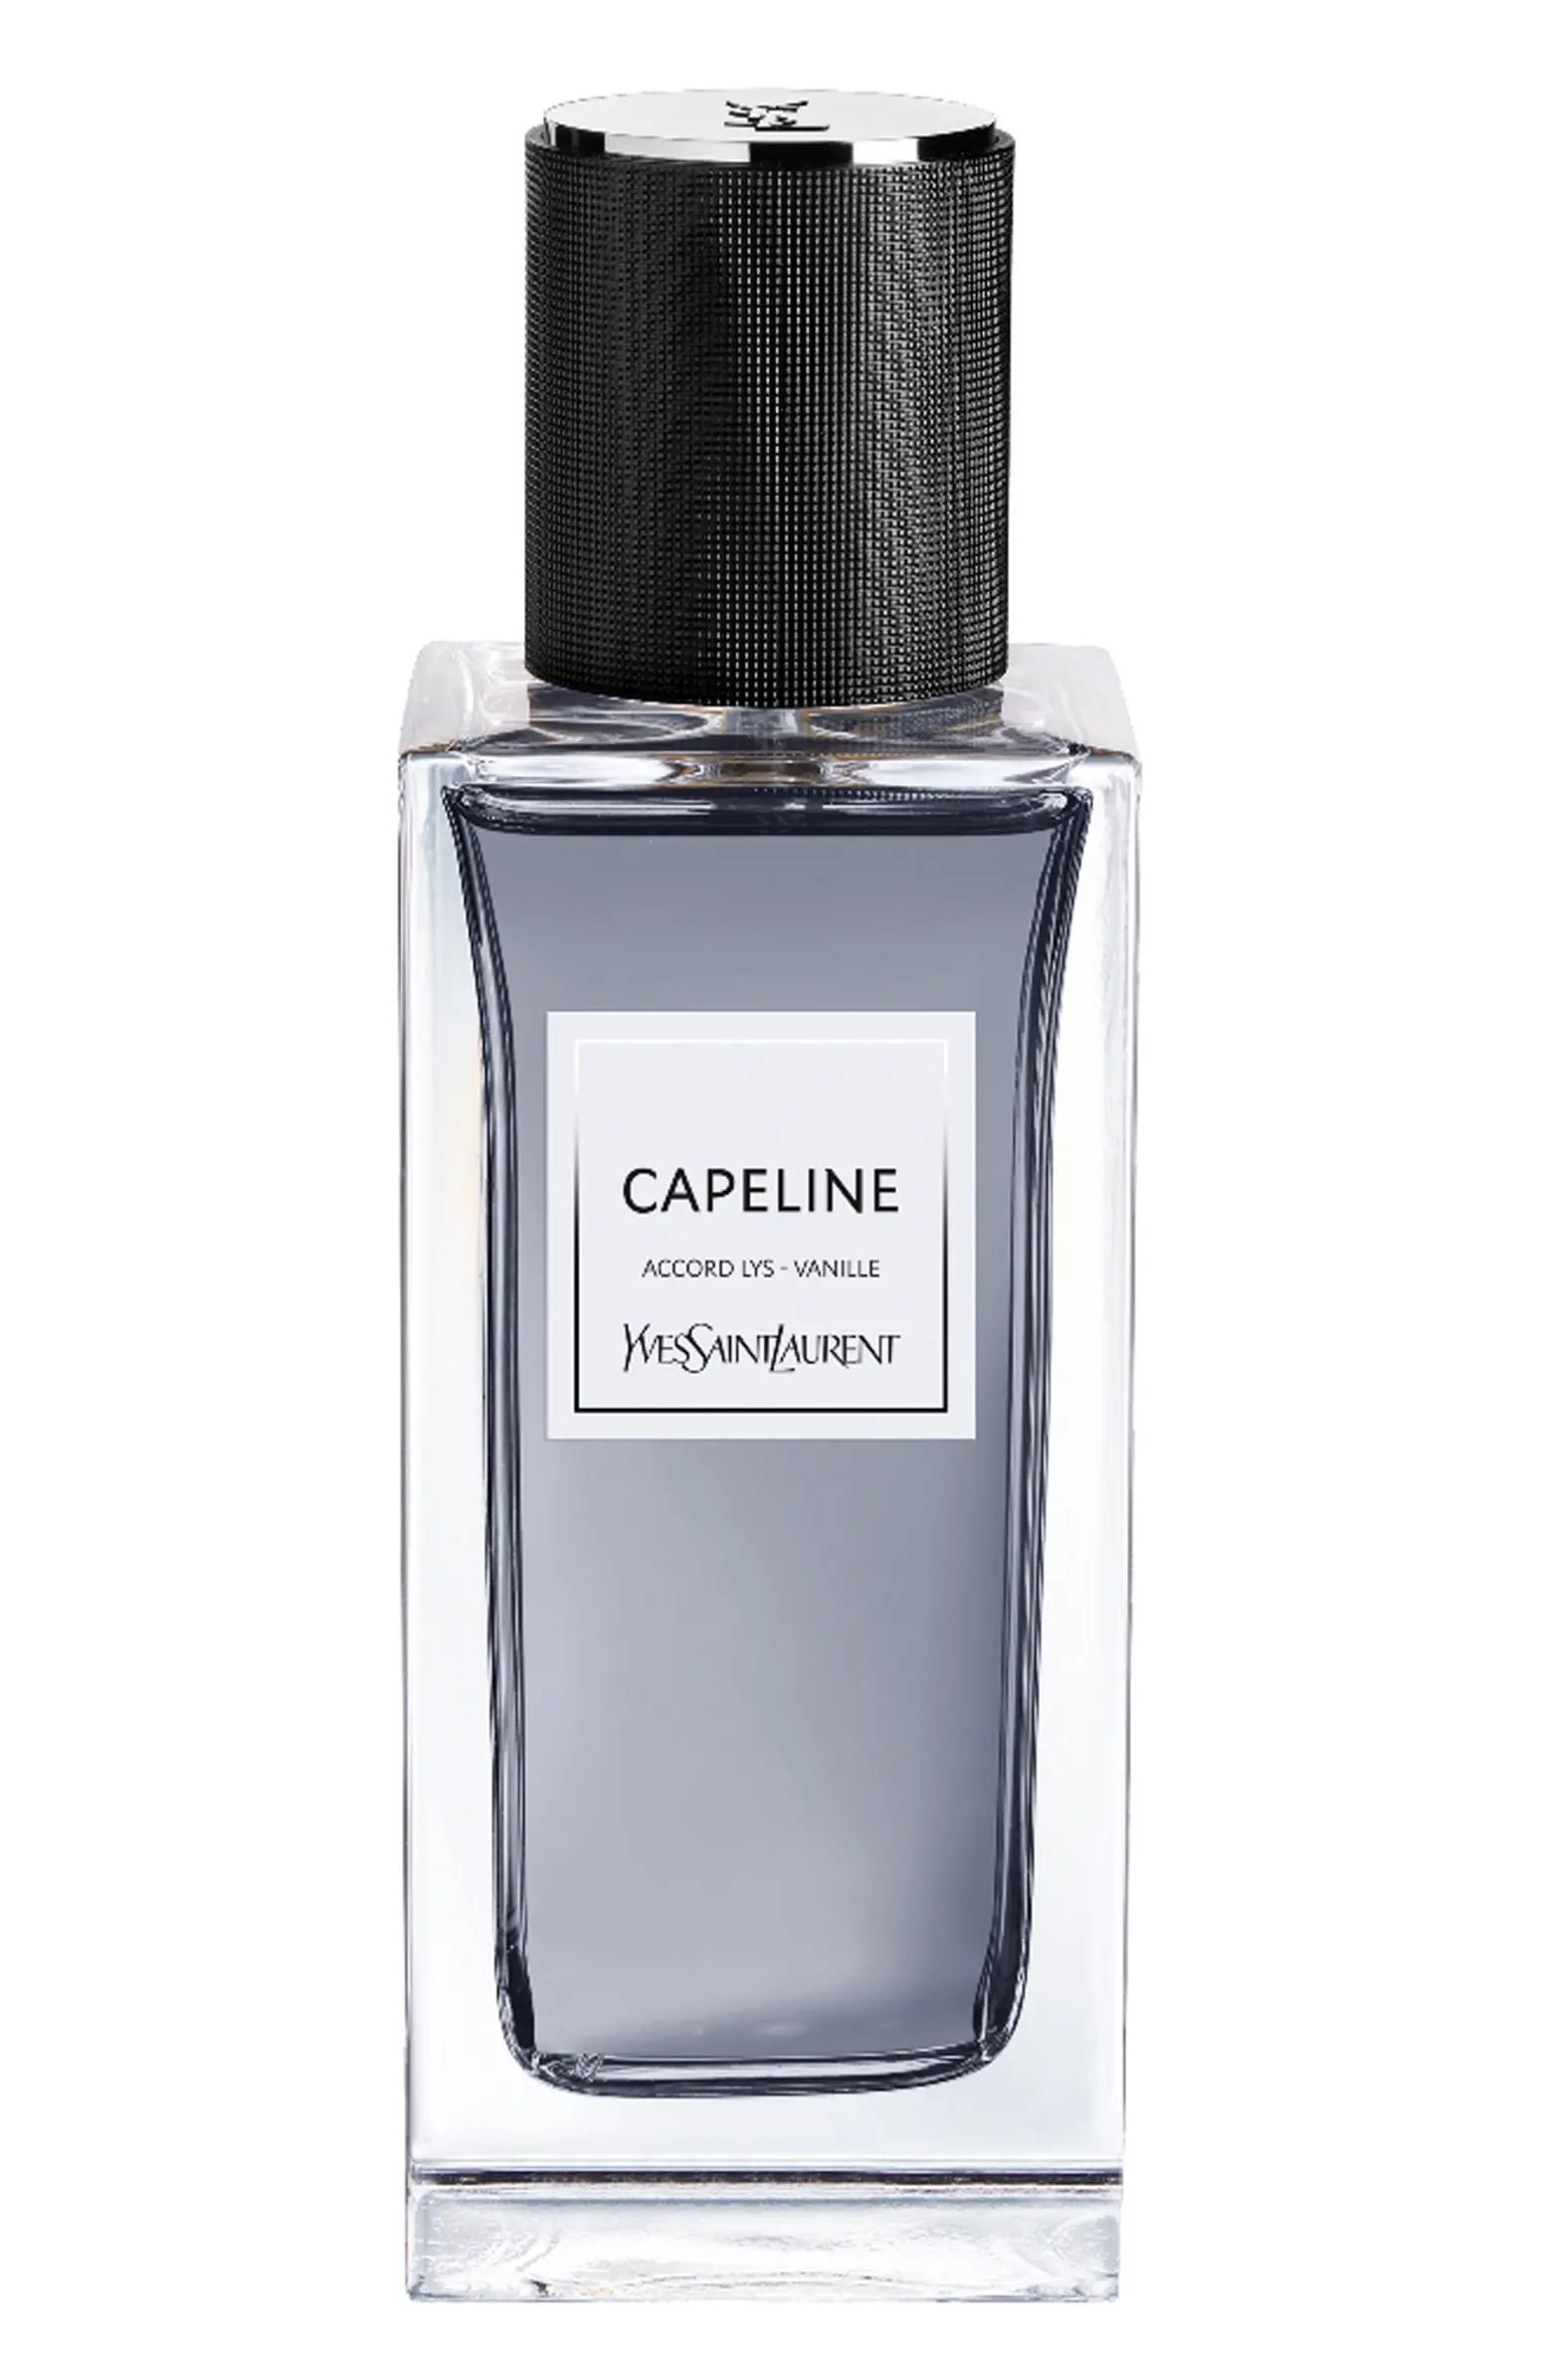 Capeline - Le Vestiaire des Parfums | Nordstrom